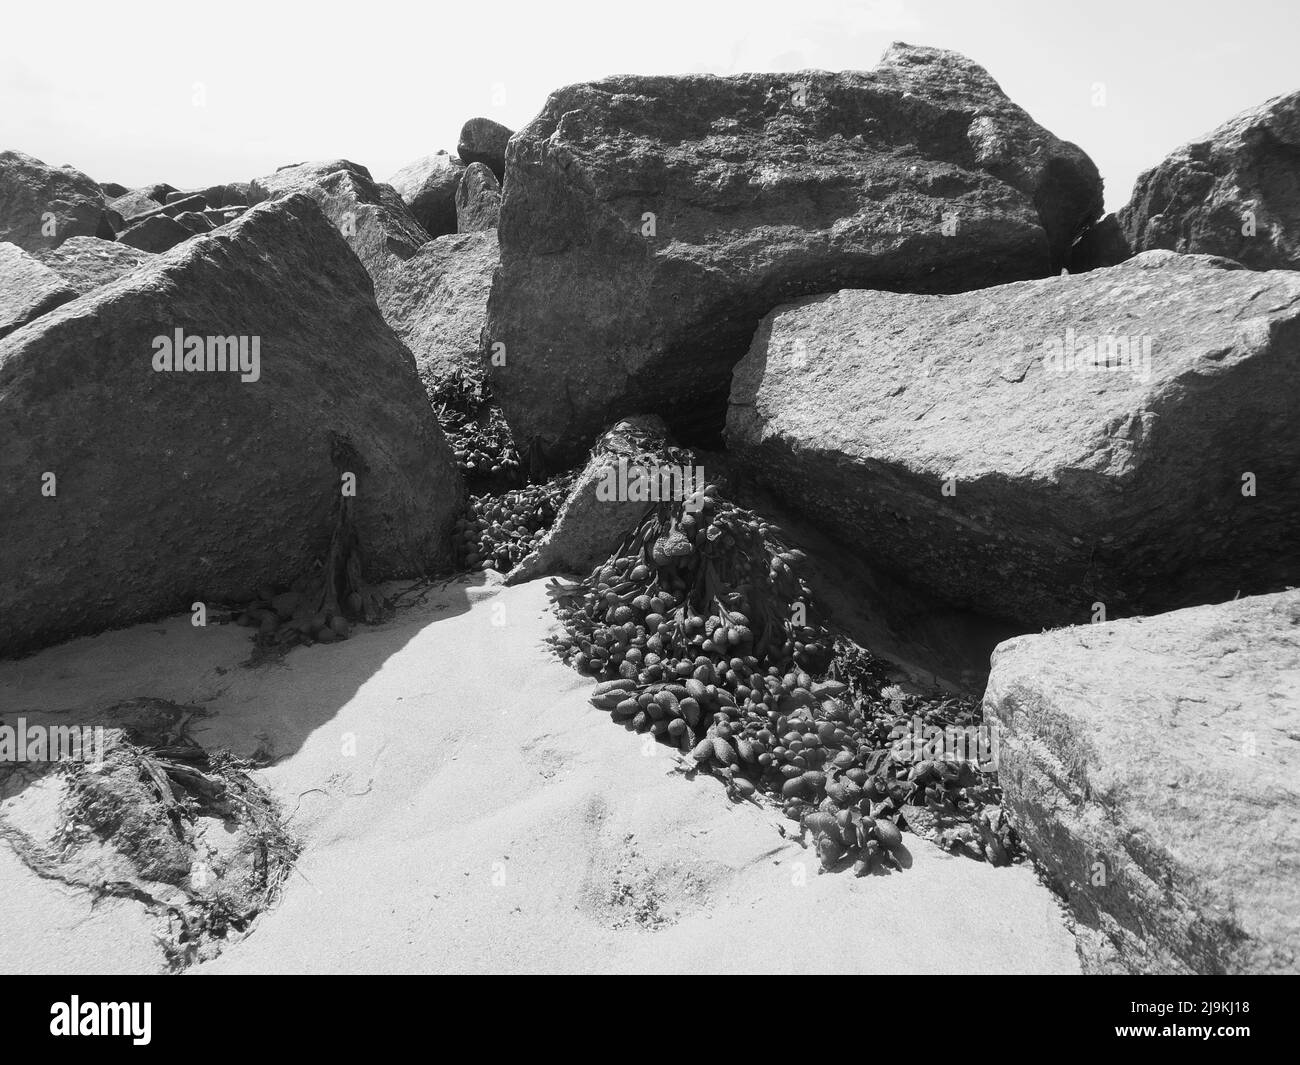 Felsen, Muschel und Algen am Strand in schwarz und weiß Stockfoto